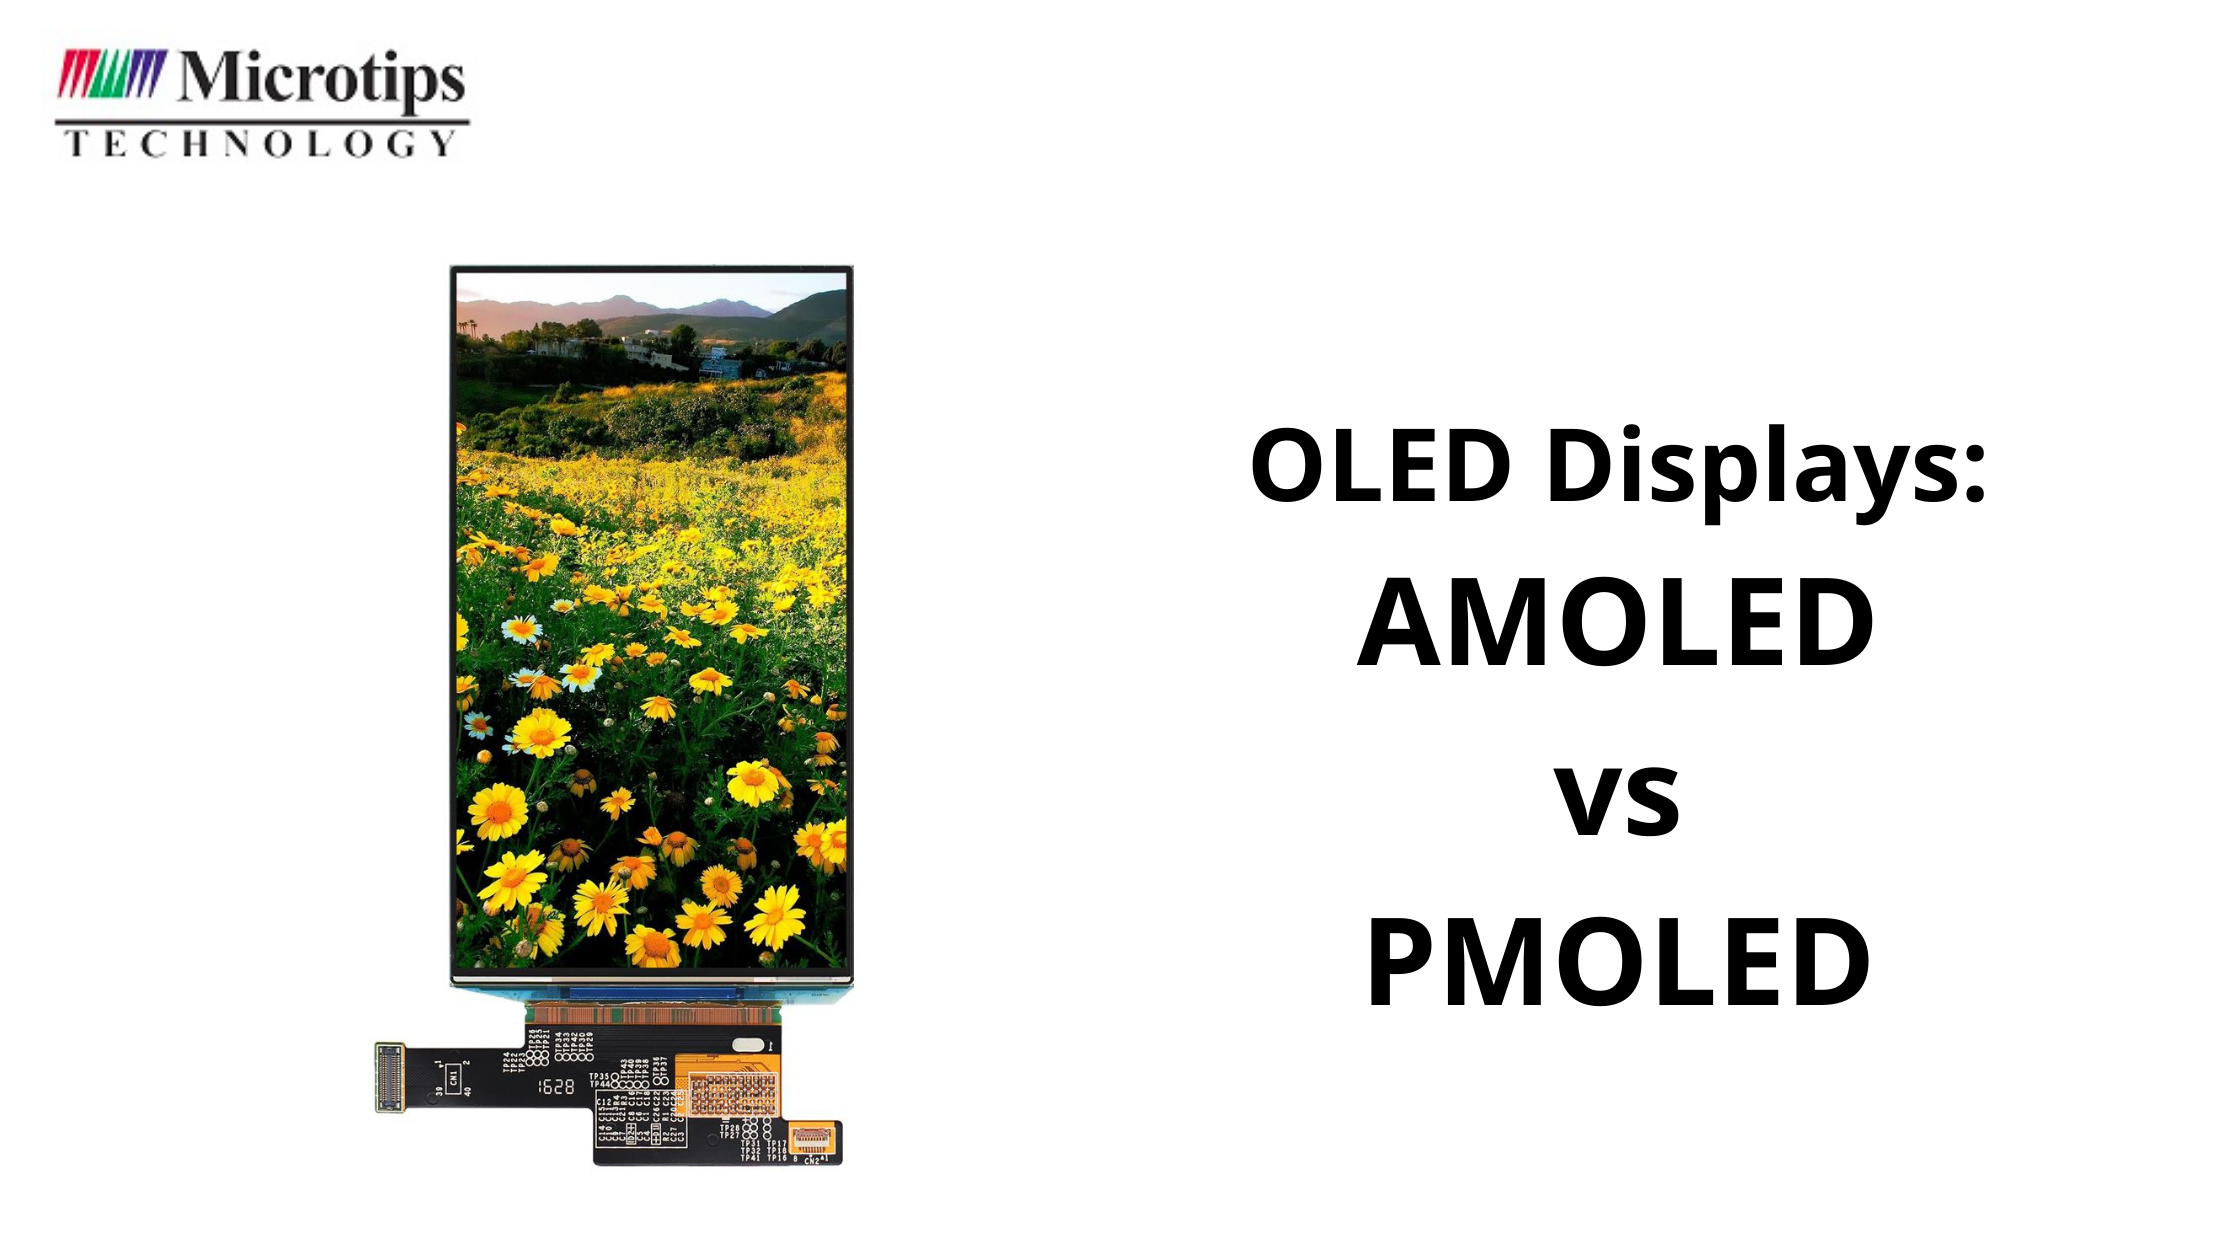 AMOLED VS PMOLED: OLED Displays